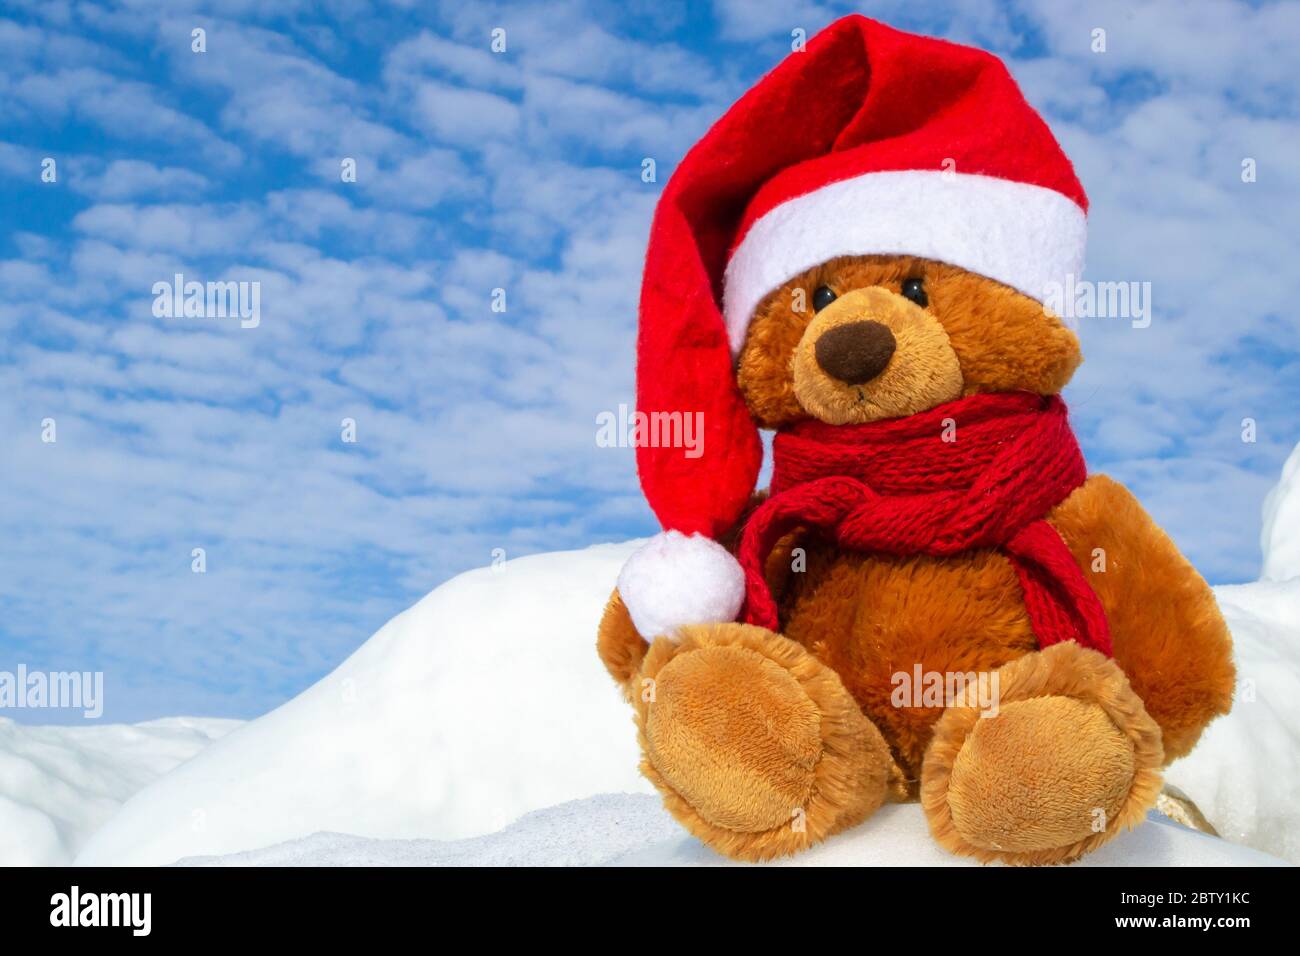 Ours de Noël dans un chapeau de Père Noël et une écharpe tricotée rouge attachée autour de son cou. Un ours en peluche est assis dans une dérive de neige sur fond de ciel bleu. Banque D'Images